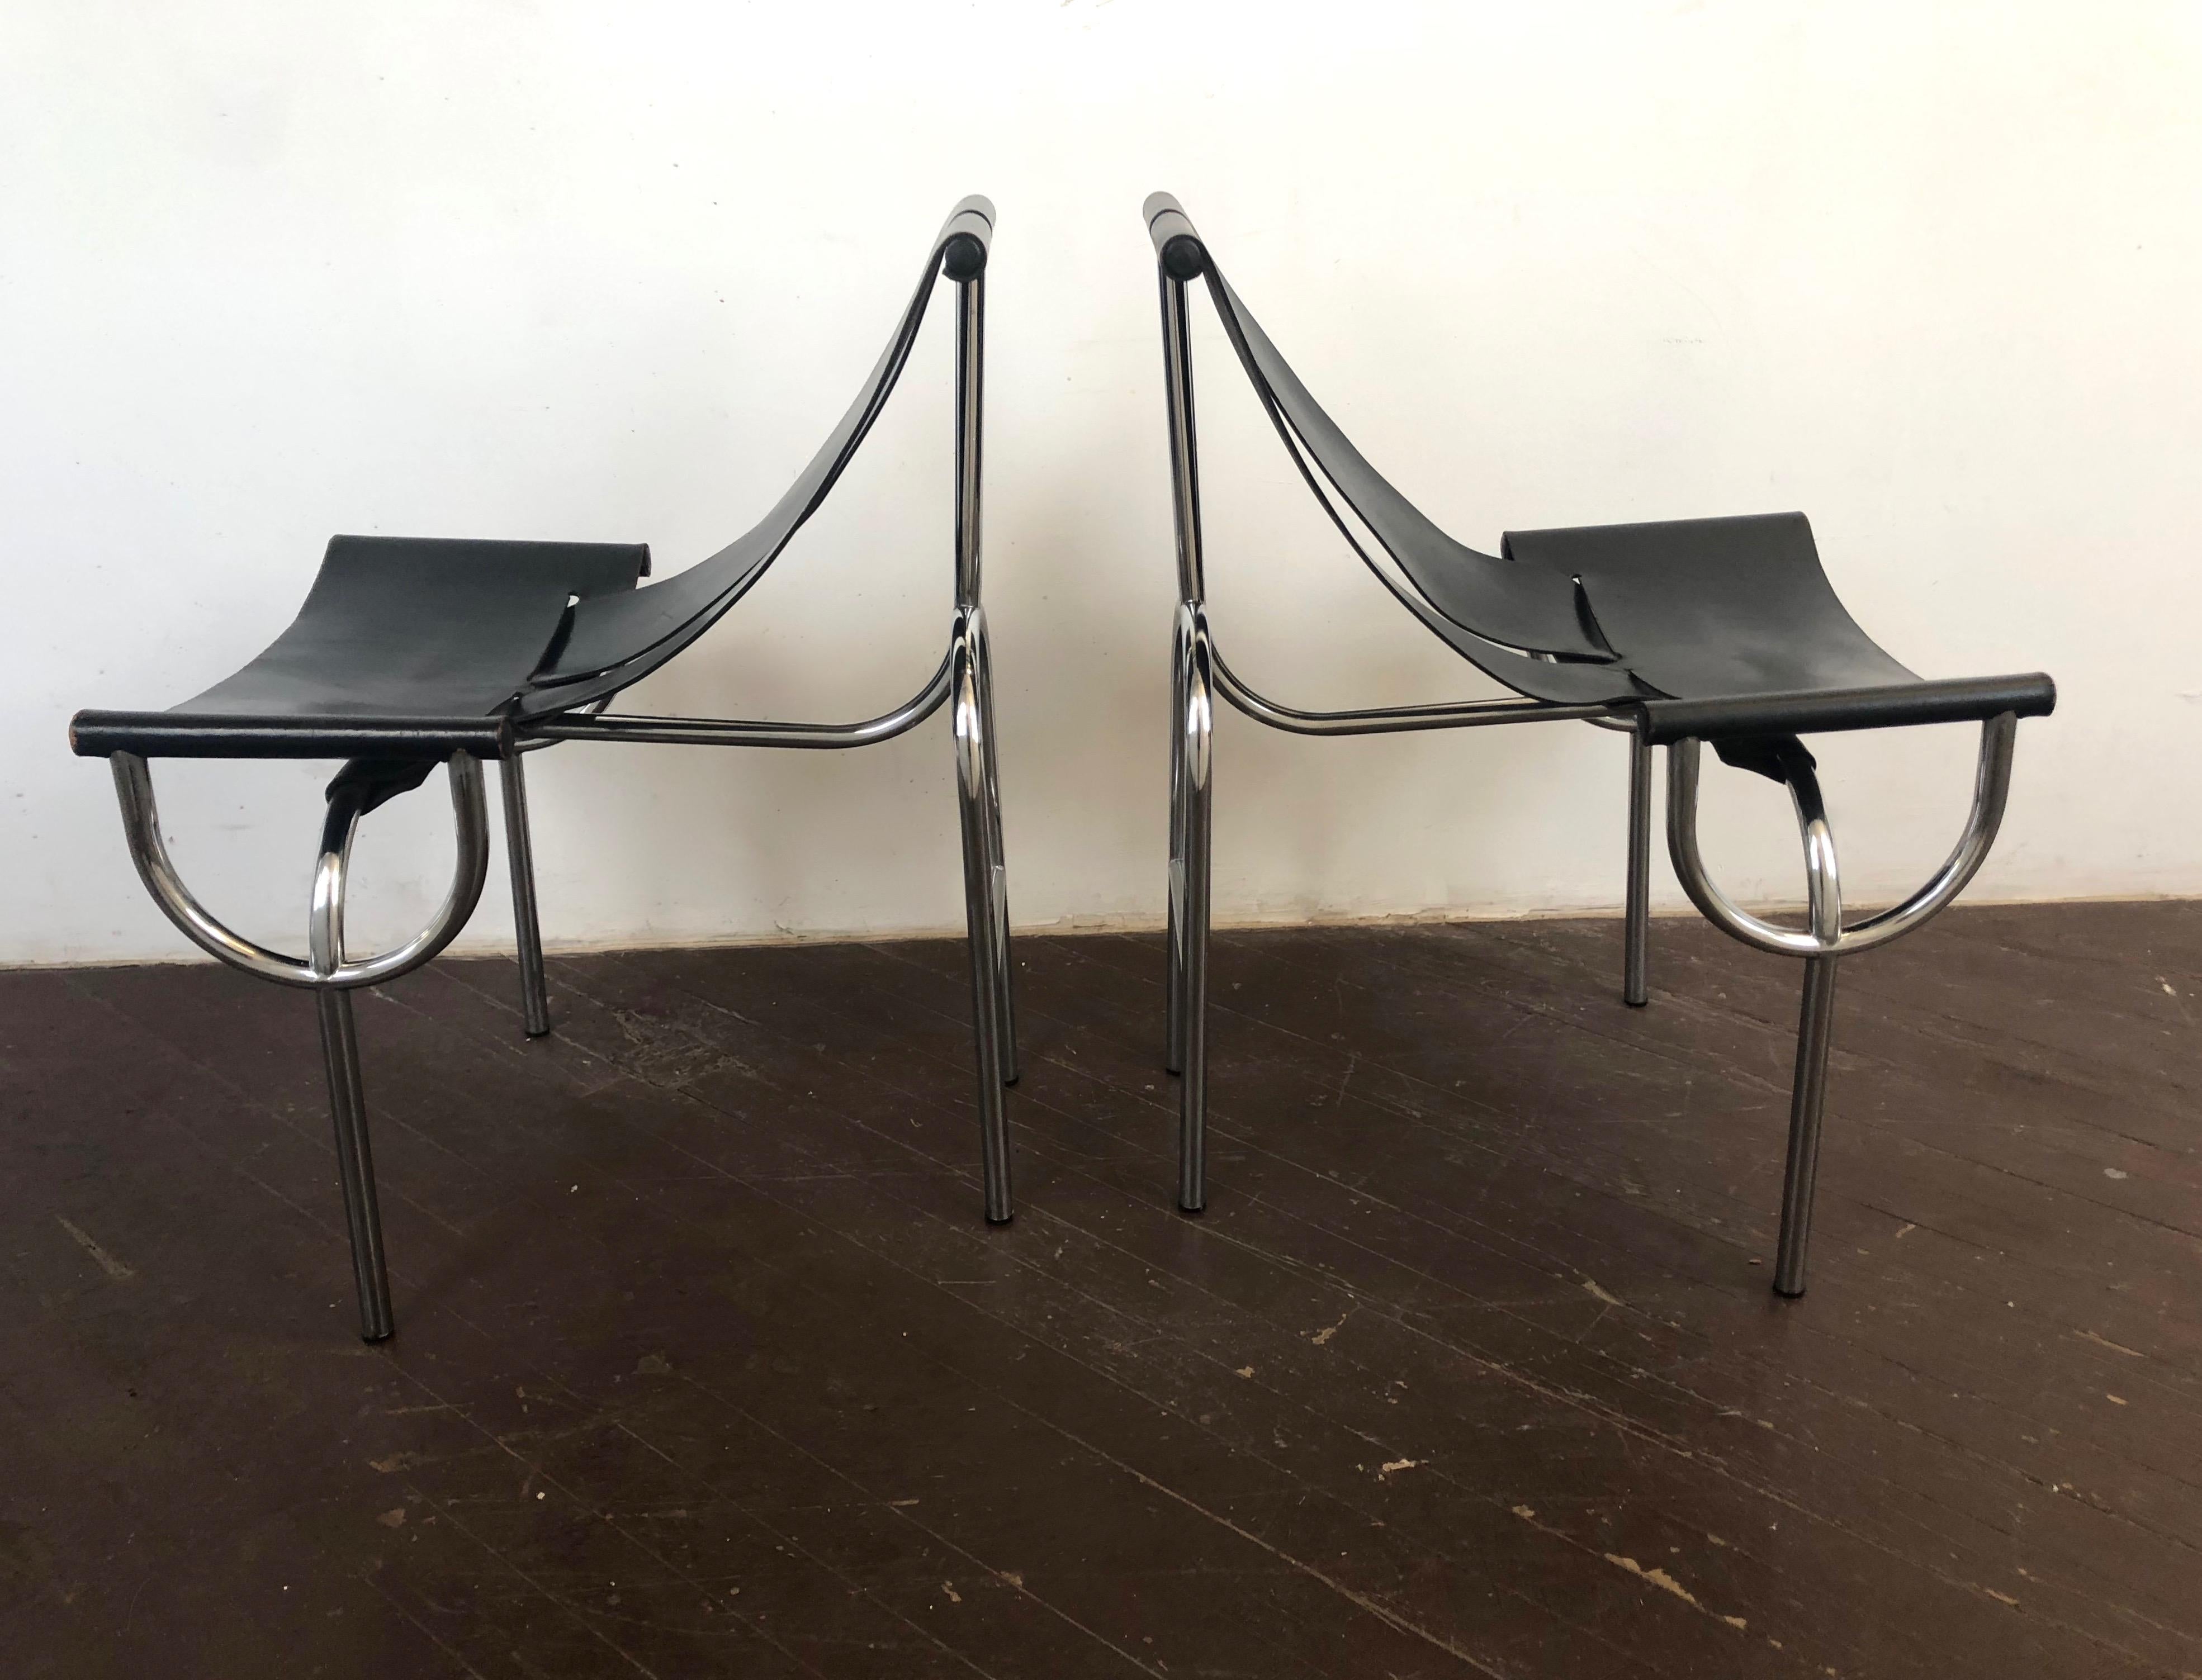 Originales Paar TRI 15 Stühle aus schwarzem Leder, entworfen 1968 von den Architekten Roberto Gabetti und Aimaro Isola, mit U-förmigen, detaillierten Beinen und Gestell aus verchromtem Stahlrohr.